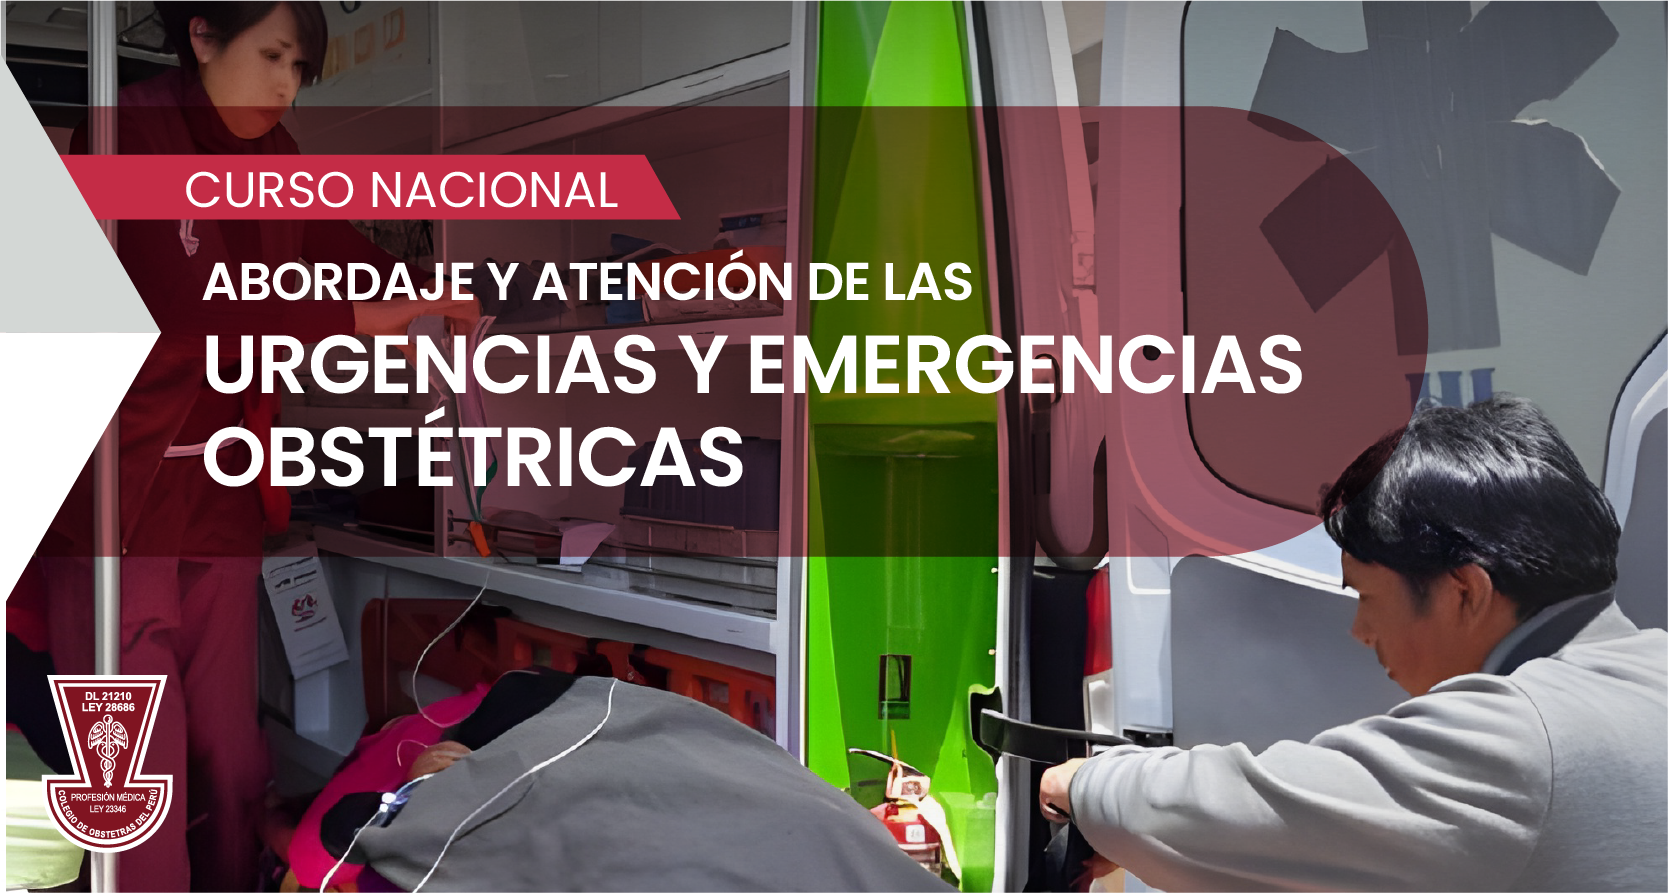 CURSO NACIONAL “Abordaje y Atención de las urgencias y emergencias obstétricas”